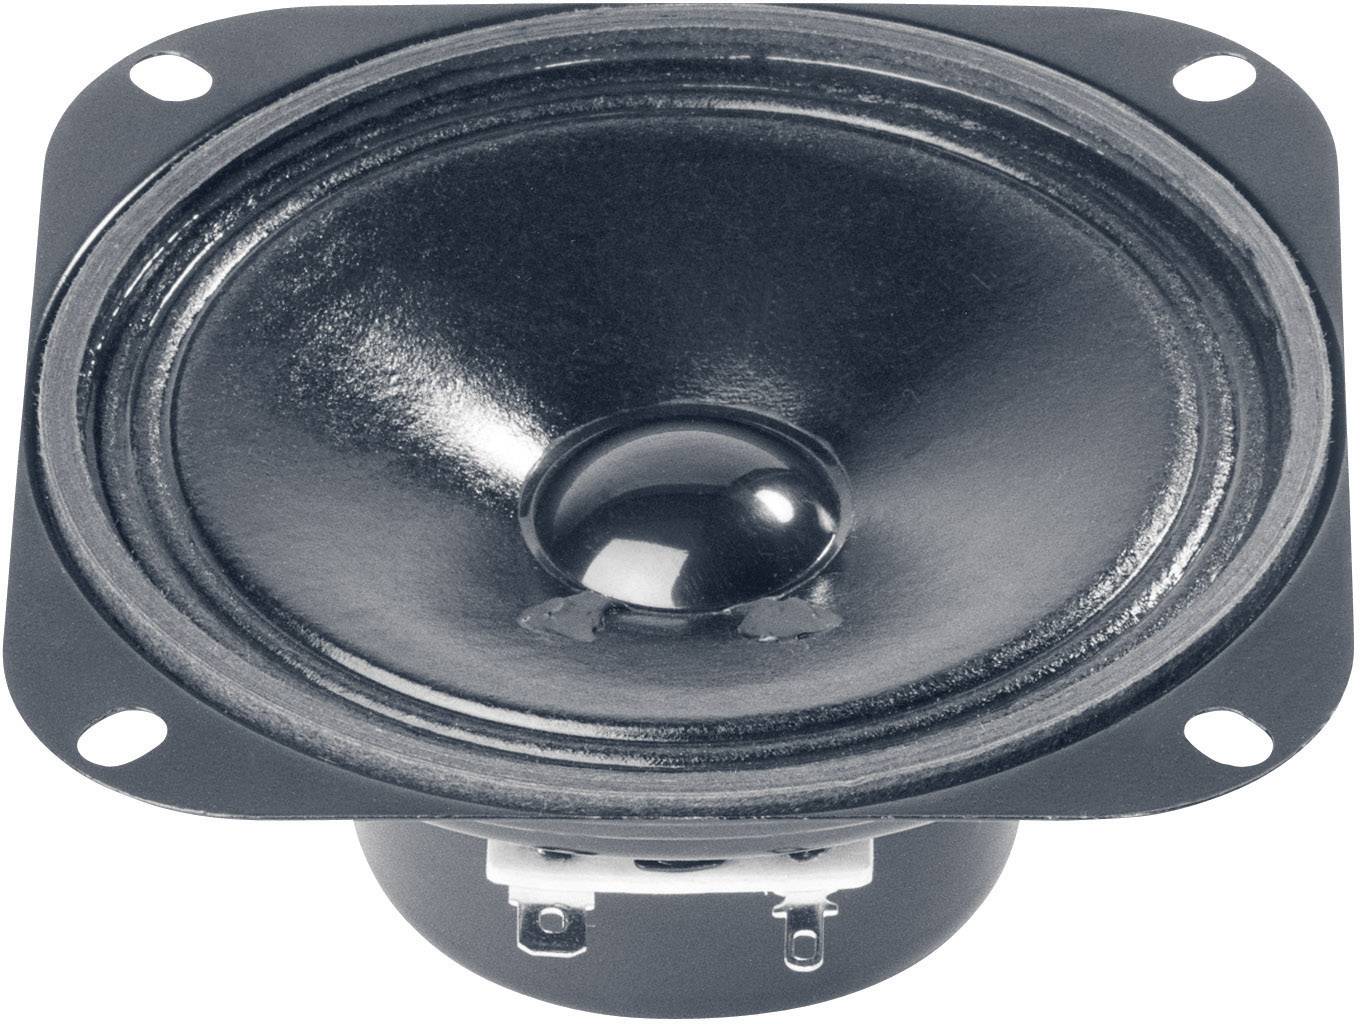 VISATON Full-range speaker magnetically shielded 10 cm (4\") 4 Ohm - Magnetisch abgeschirmter 10cm Br